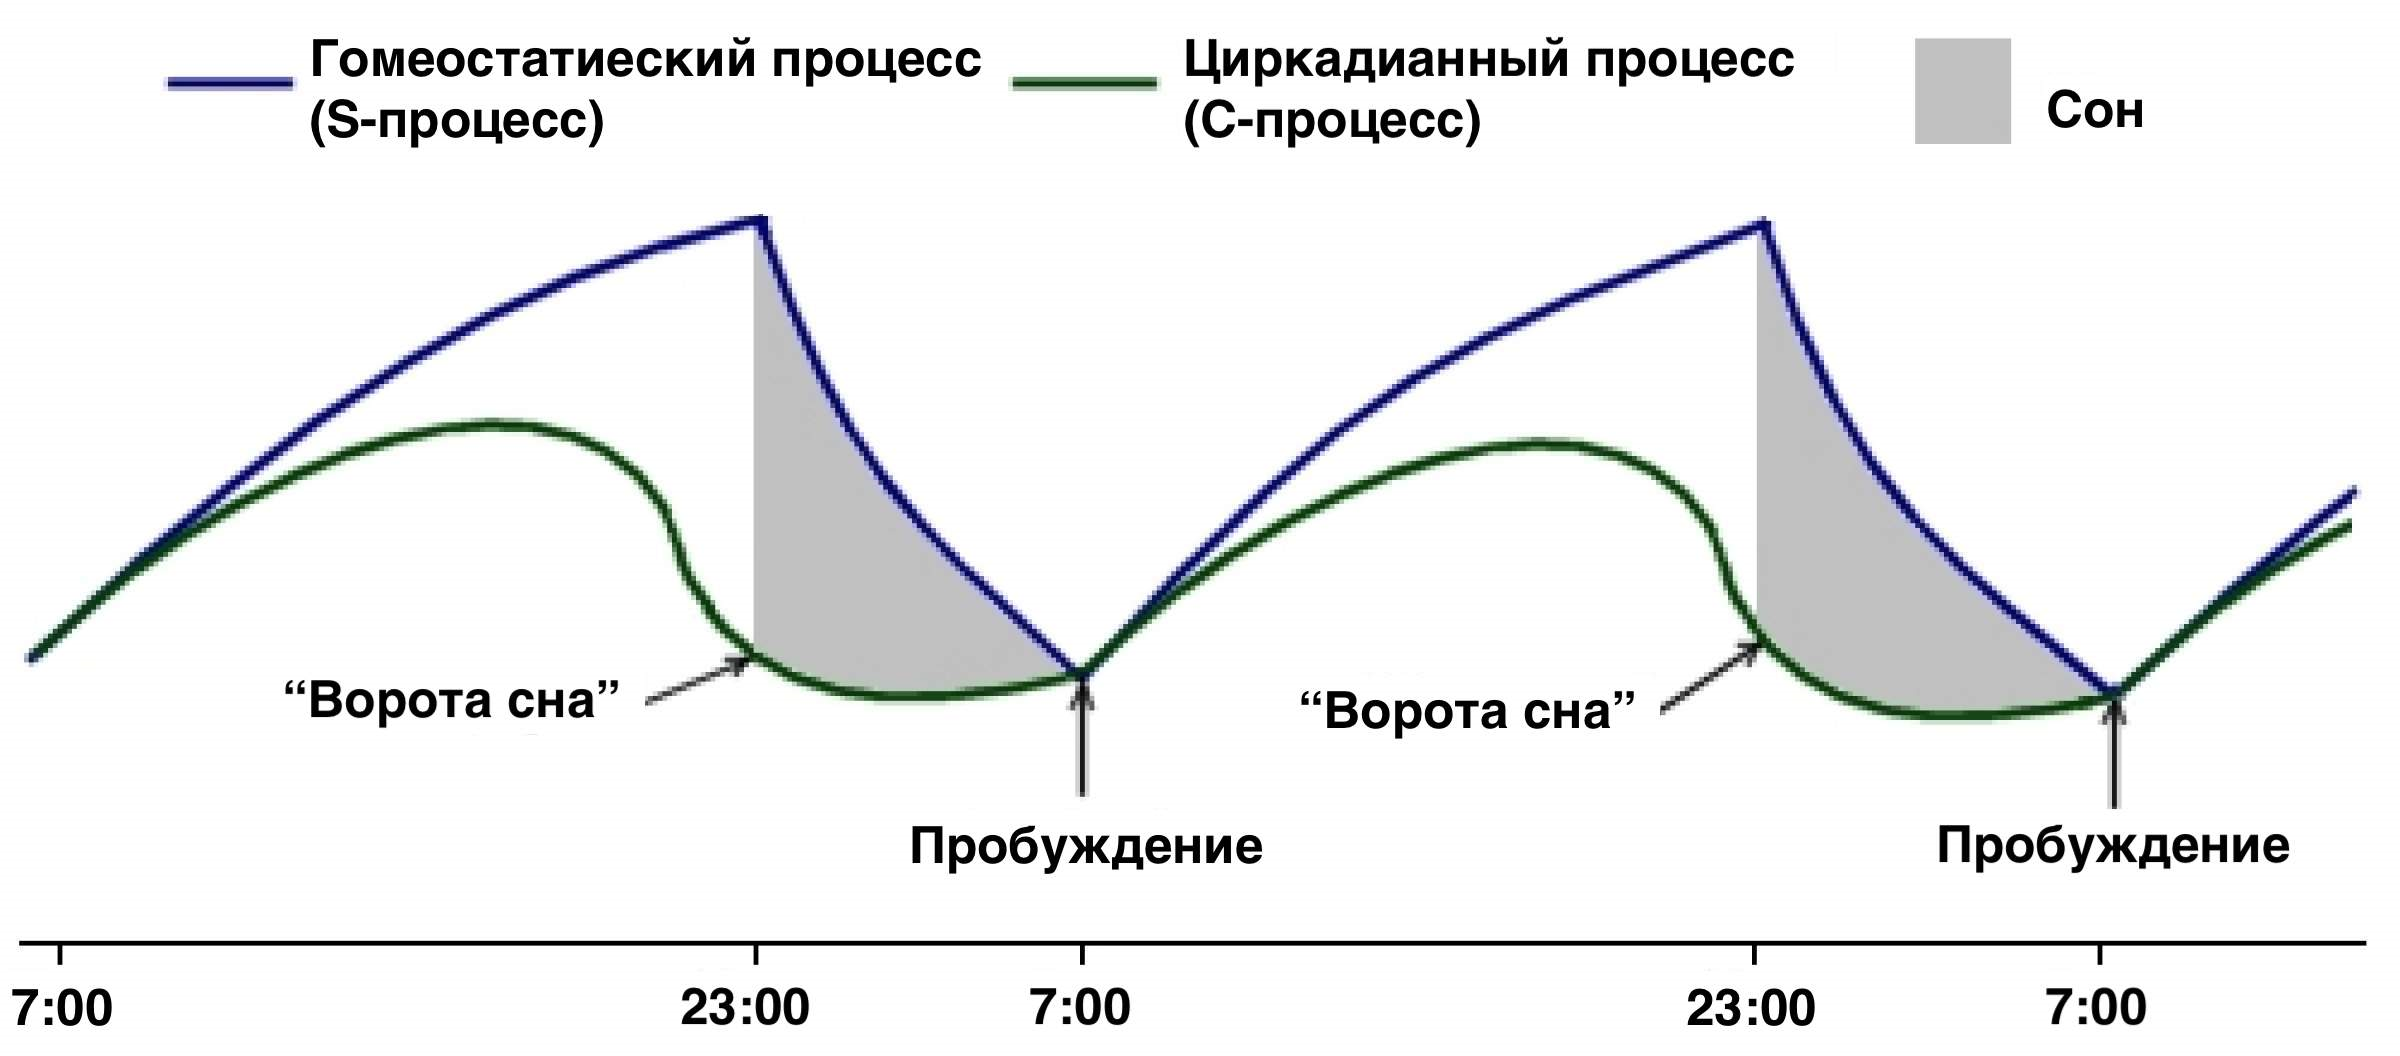 Двухкомпонентная модель регуляции сна